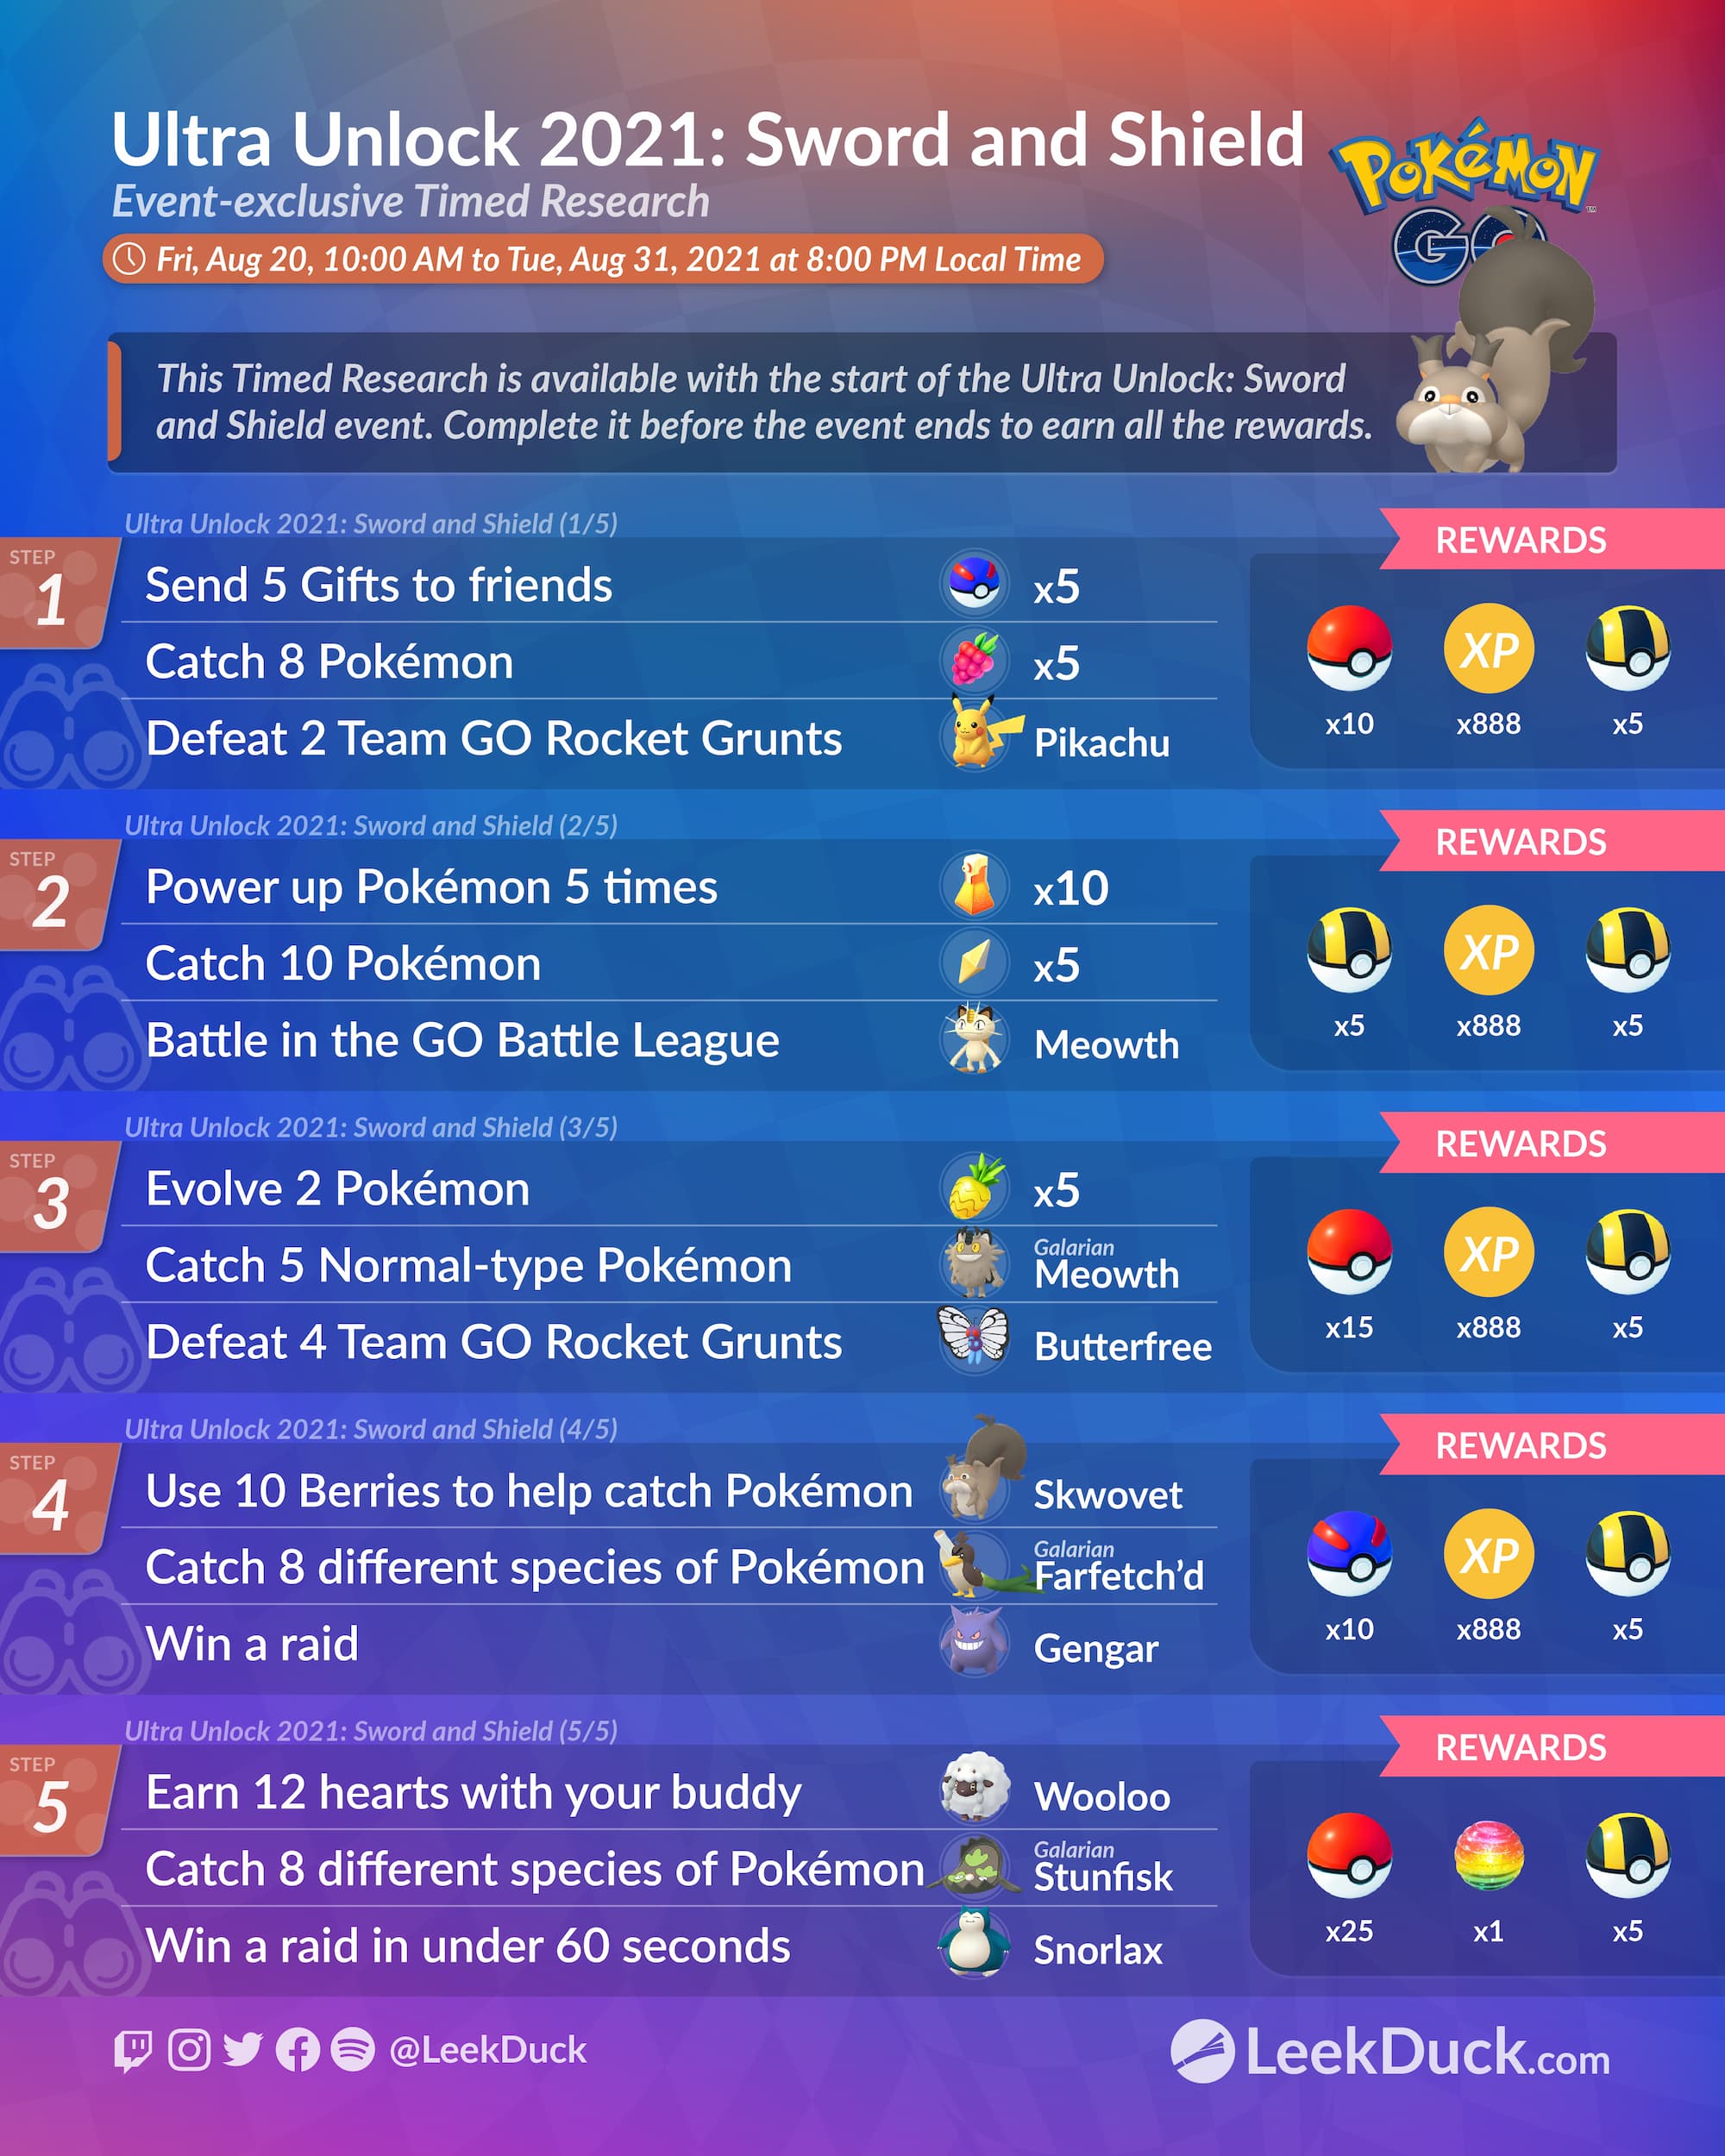 Pokémon Go Ultra Unlock 2020 makeup quest steps, dates and rewards  explained